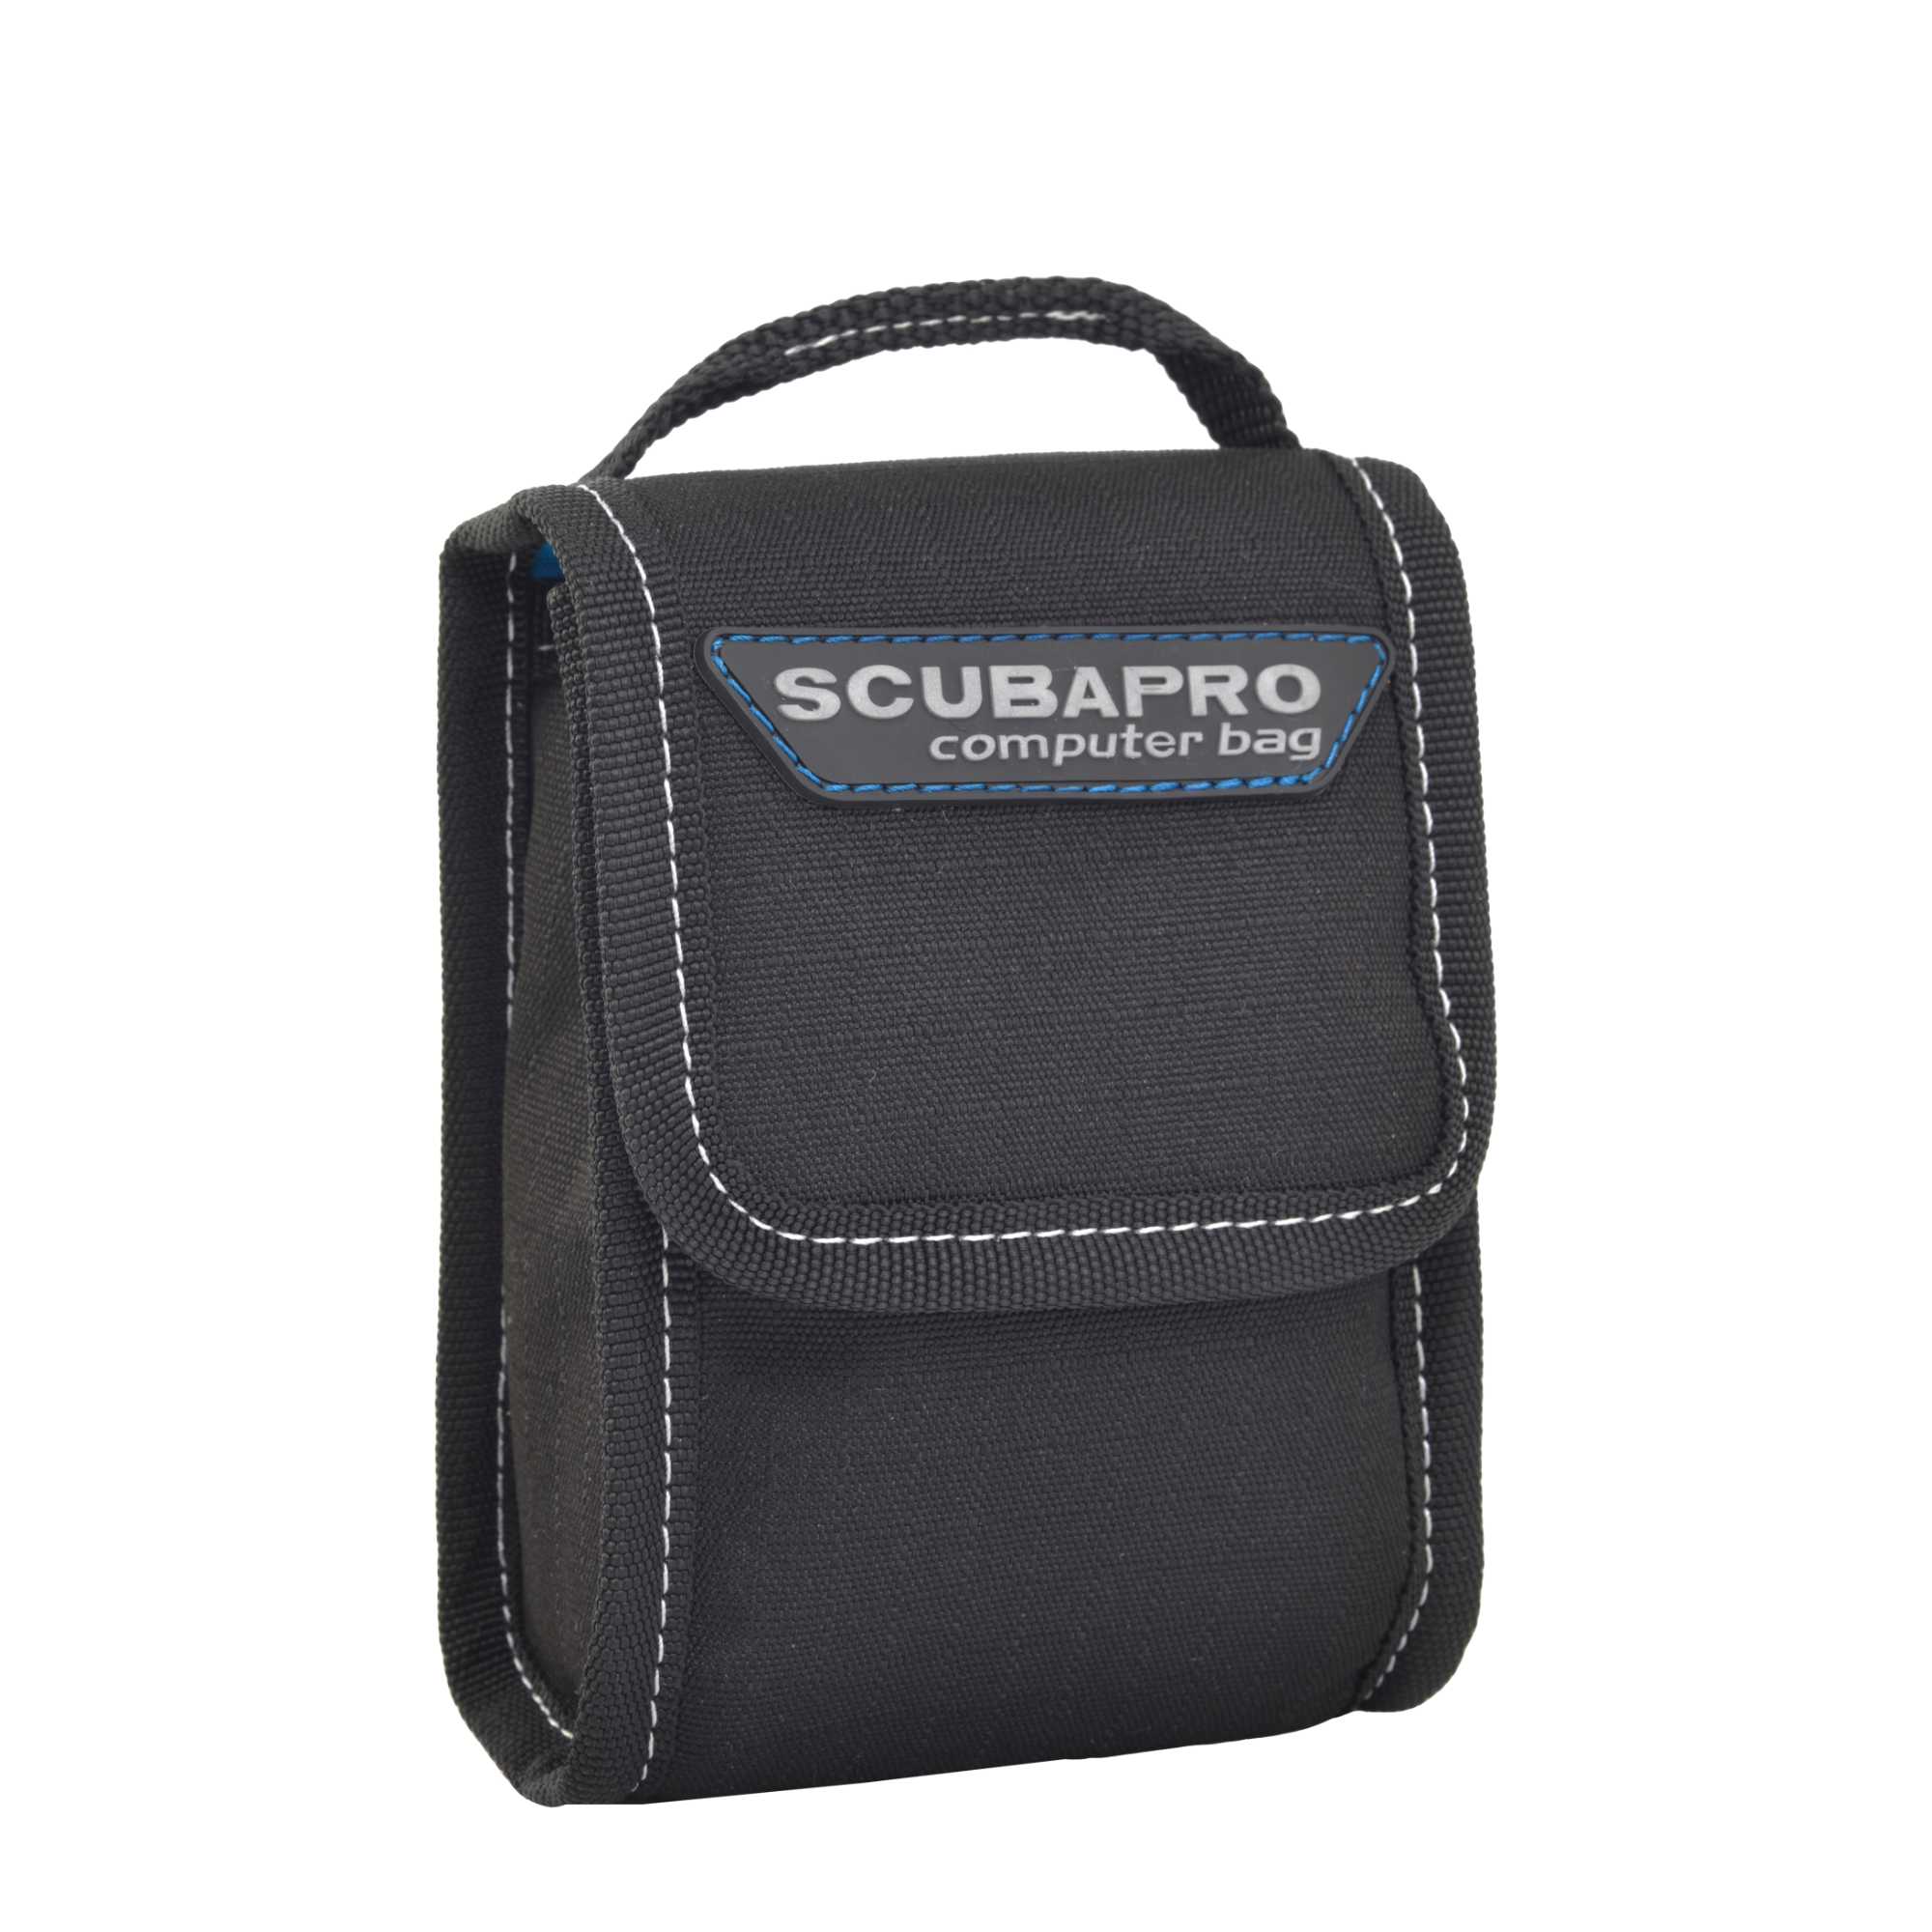 Computer Bag Bestandteil der Atemreglertasche von Scubapro